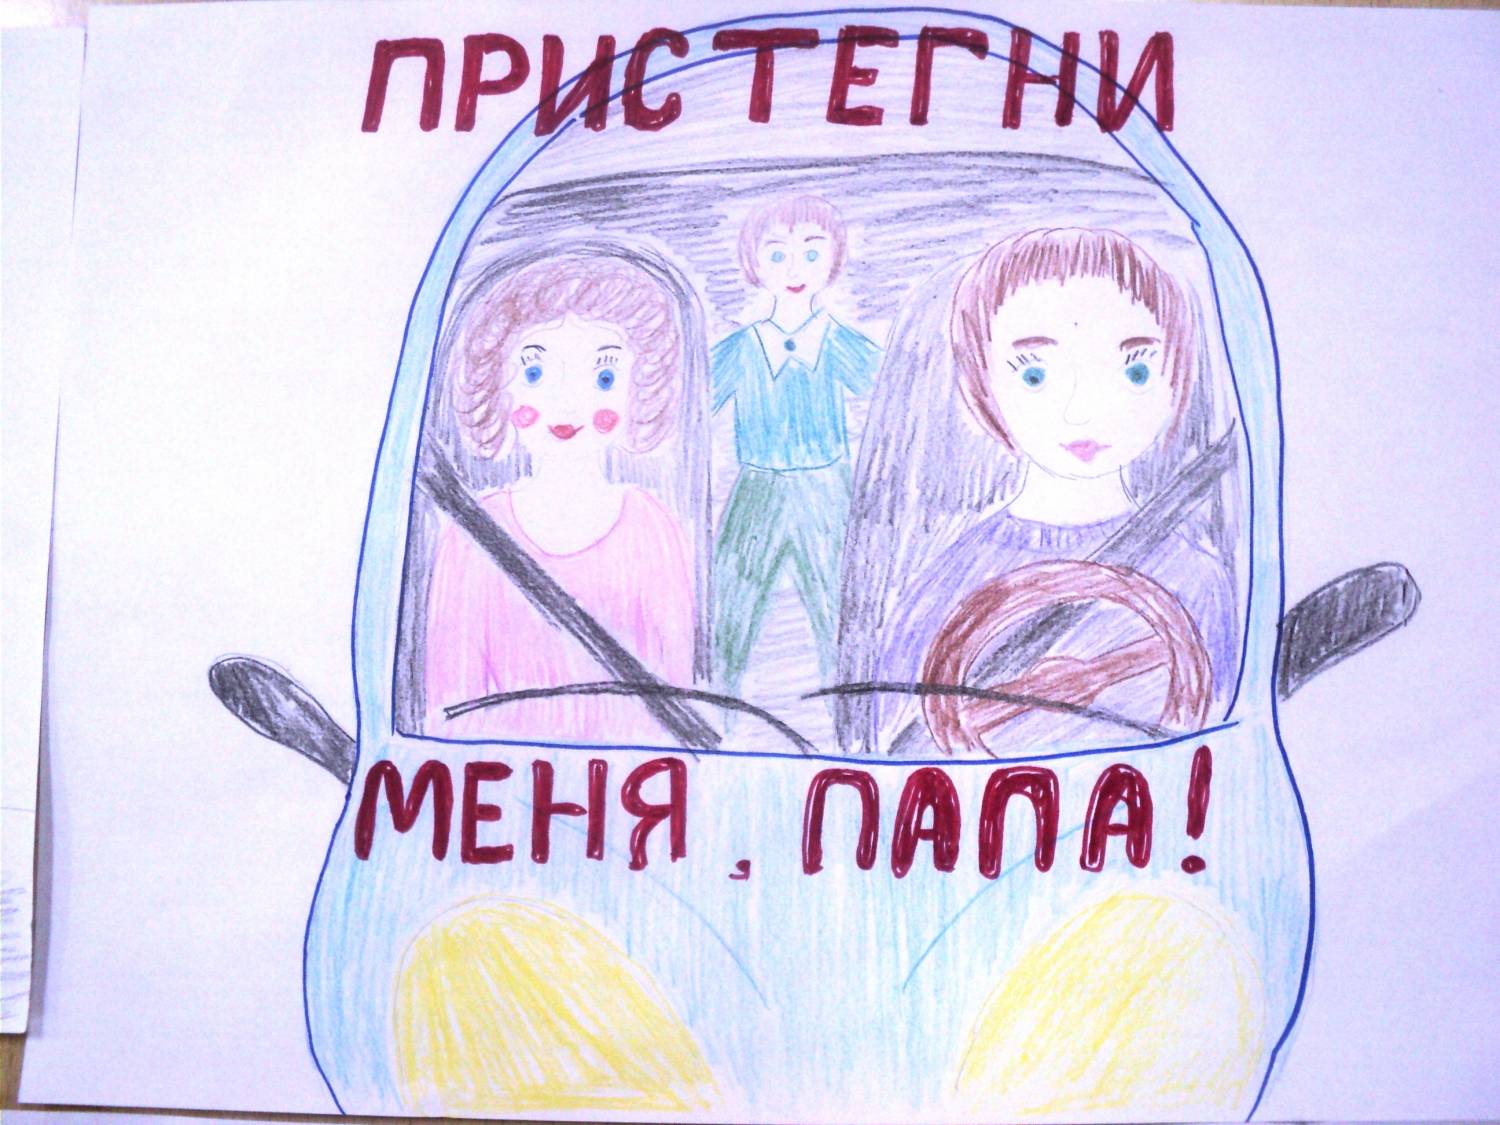 Плакат призывающий к безопасности. Ребёнок главный пассажир рисунок. Плакат призывающий к соблюдению правил безопасности в транспорте. Рисунок на тему ребенок главный пассажир. Плакат кобоюдение правилбезопвсности в траснпопте.